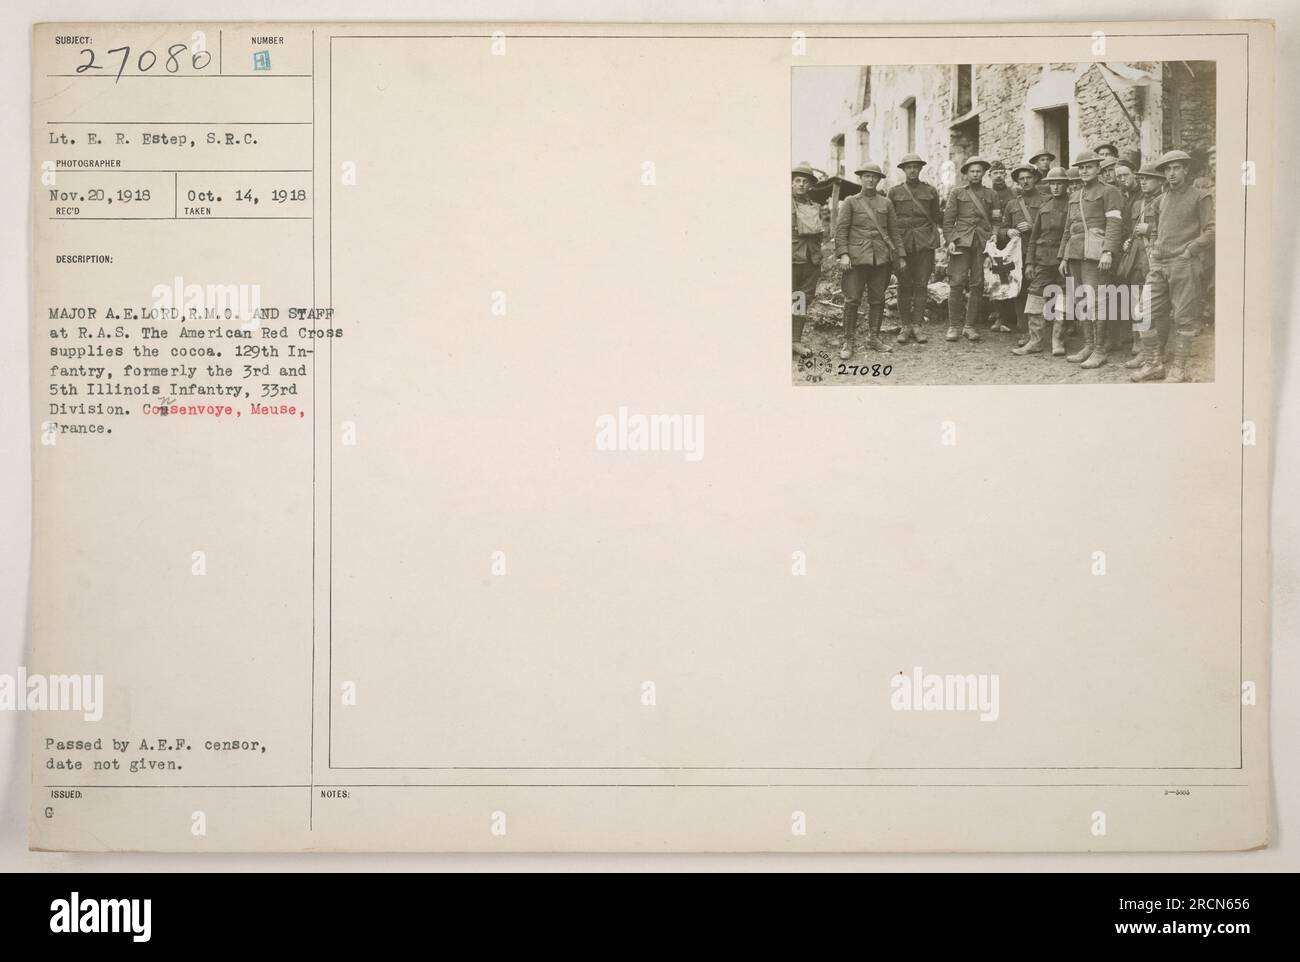 LT. E. R. Estep, S.R.C. fotografierte Major A. E. Lord, R.M.O., und Mitarbeiter von R.A.S. (Rastplatz). Das Foto wurde am 14. Oktober 1918 aufgenommen und am 20. November 1918 erhalten. Das Bild zeigt die 129. Infanterie, die früher die 3. Und 5. Illinois-Infanterie aus der 33. Division war. Das amerikanische Rote Kreuz ist als Lieferant von Kakao abgebildet. Der Standort ist Consenvoye, Mause, Frankreich. Das Foto wurde vom A.E.F.-Zensor übergeben, aber es gibt kein Datum für die Zensur. Stockfoto